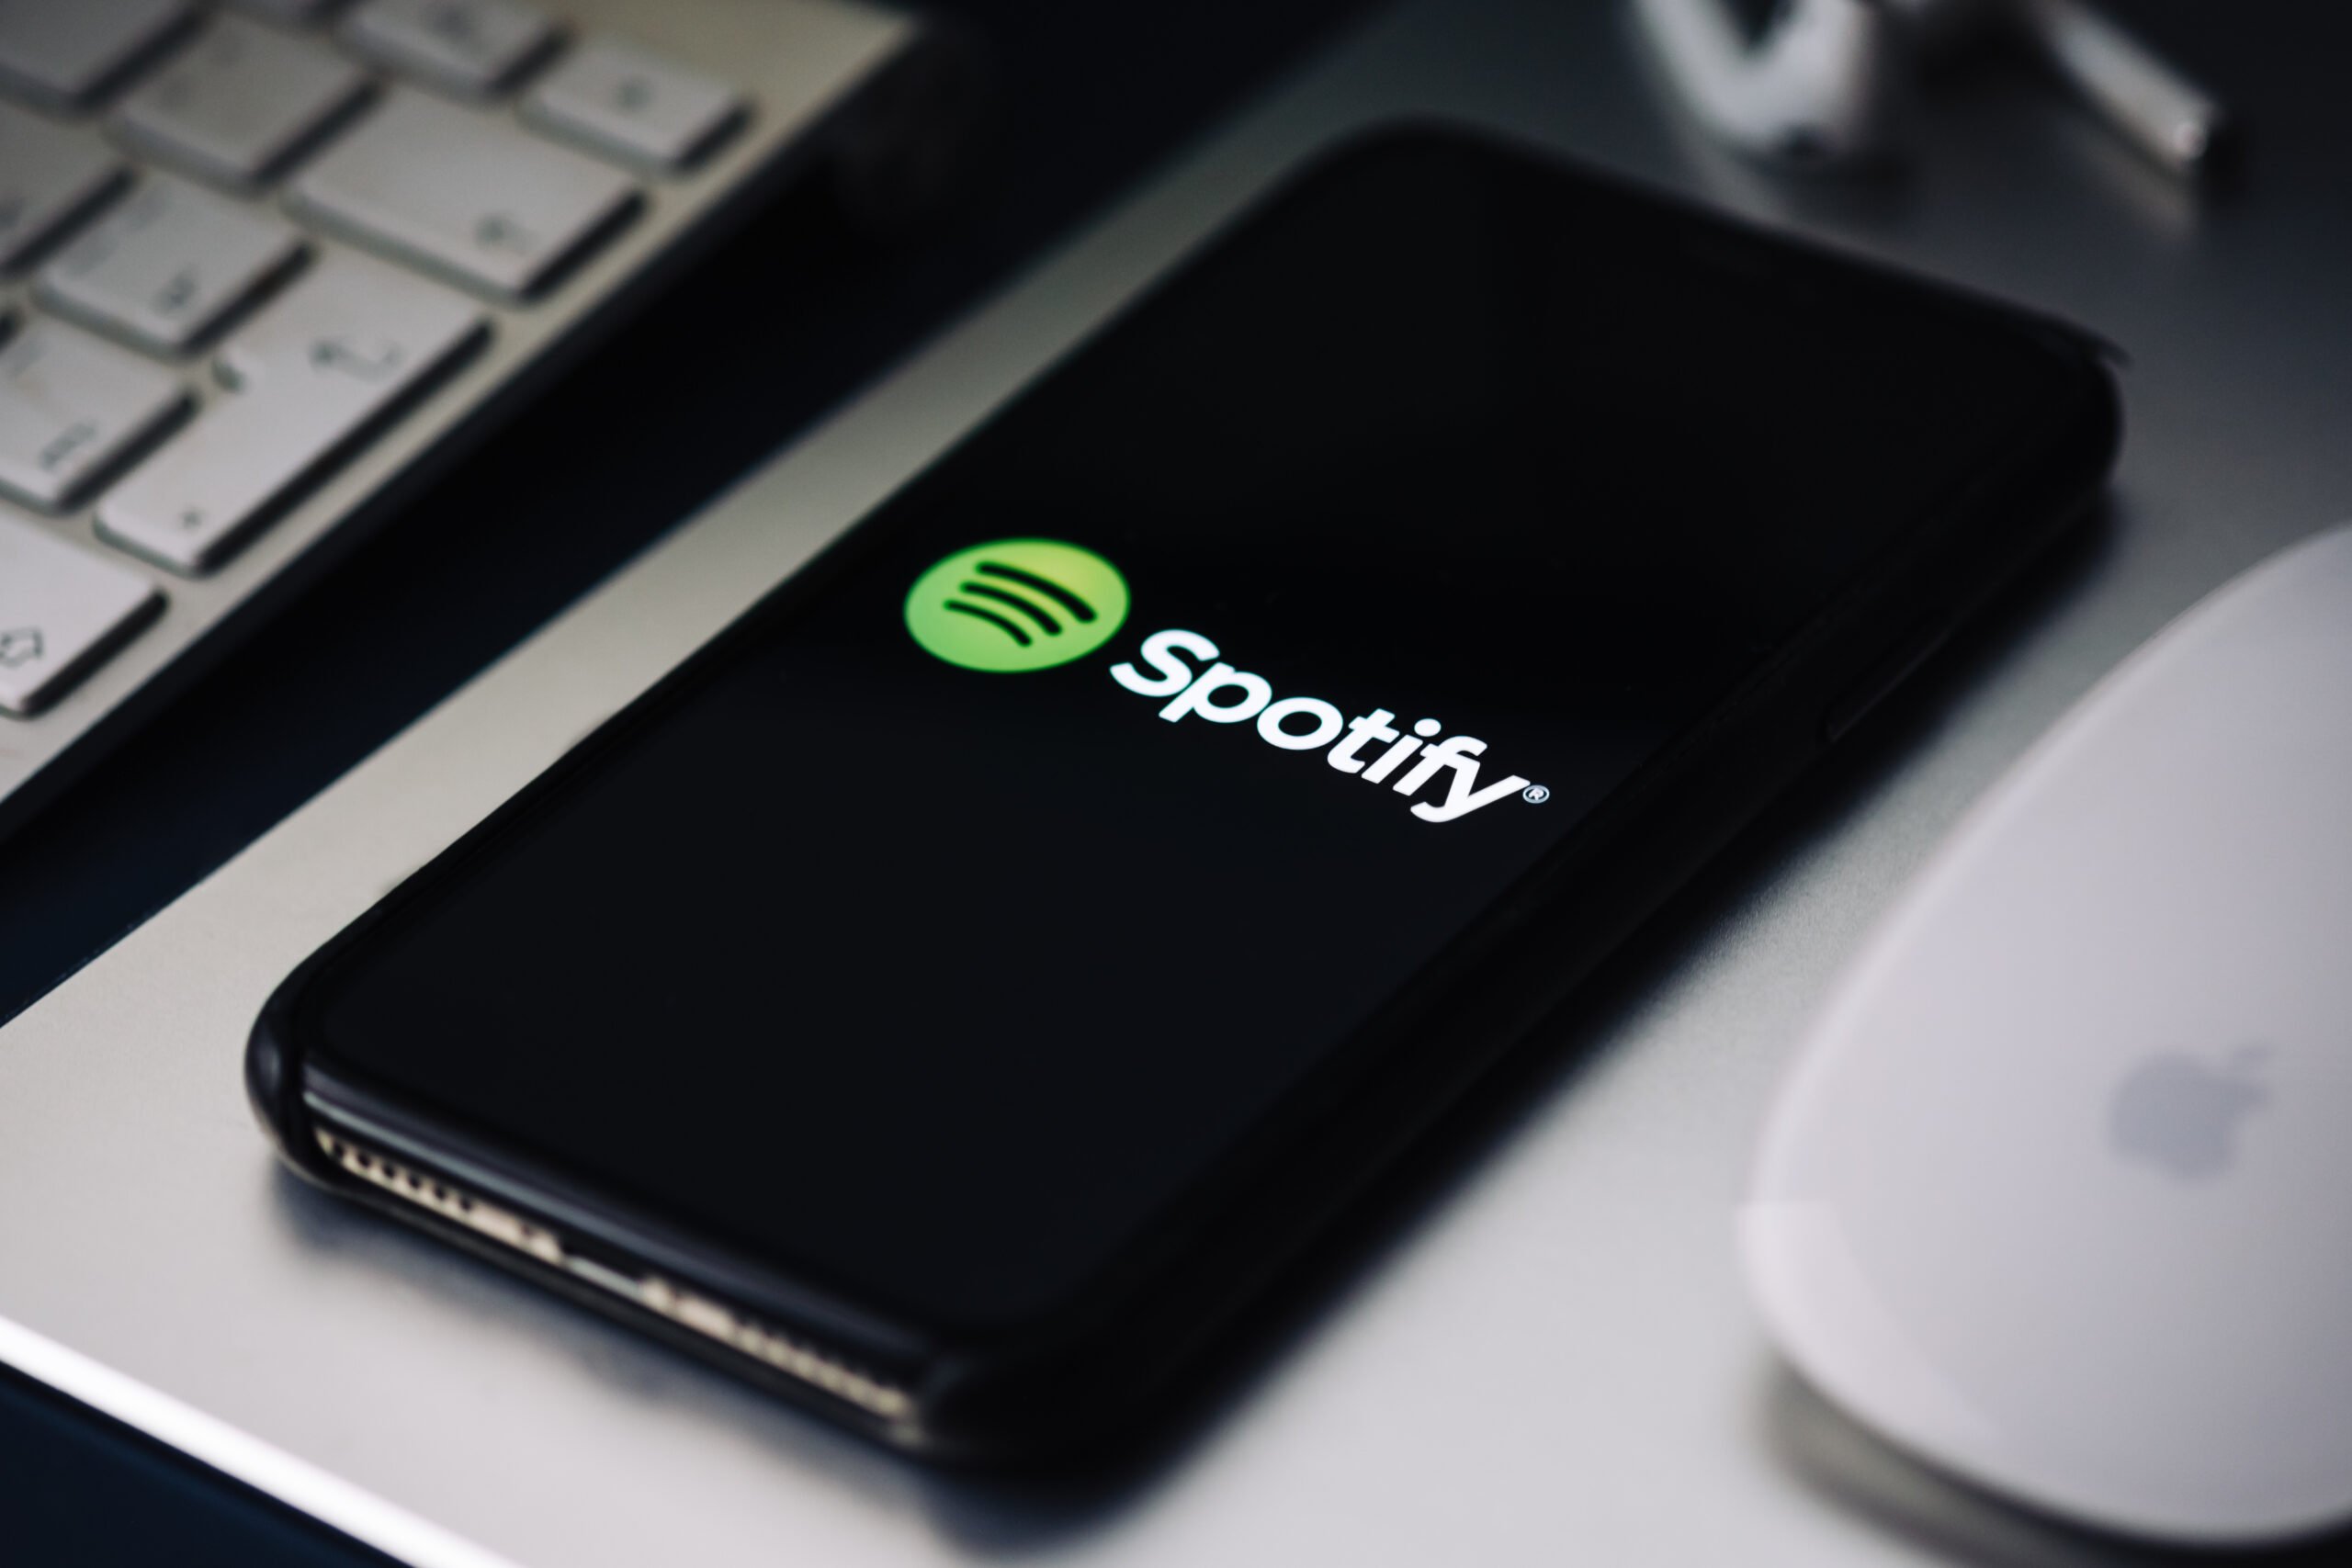 Czarny smartfon z logo Spotify na ekranie, położony na laptopie obok białej myszki komputerowej.